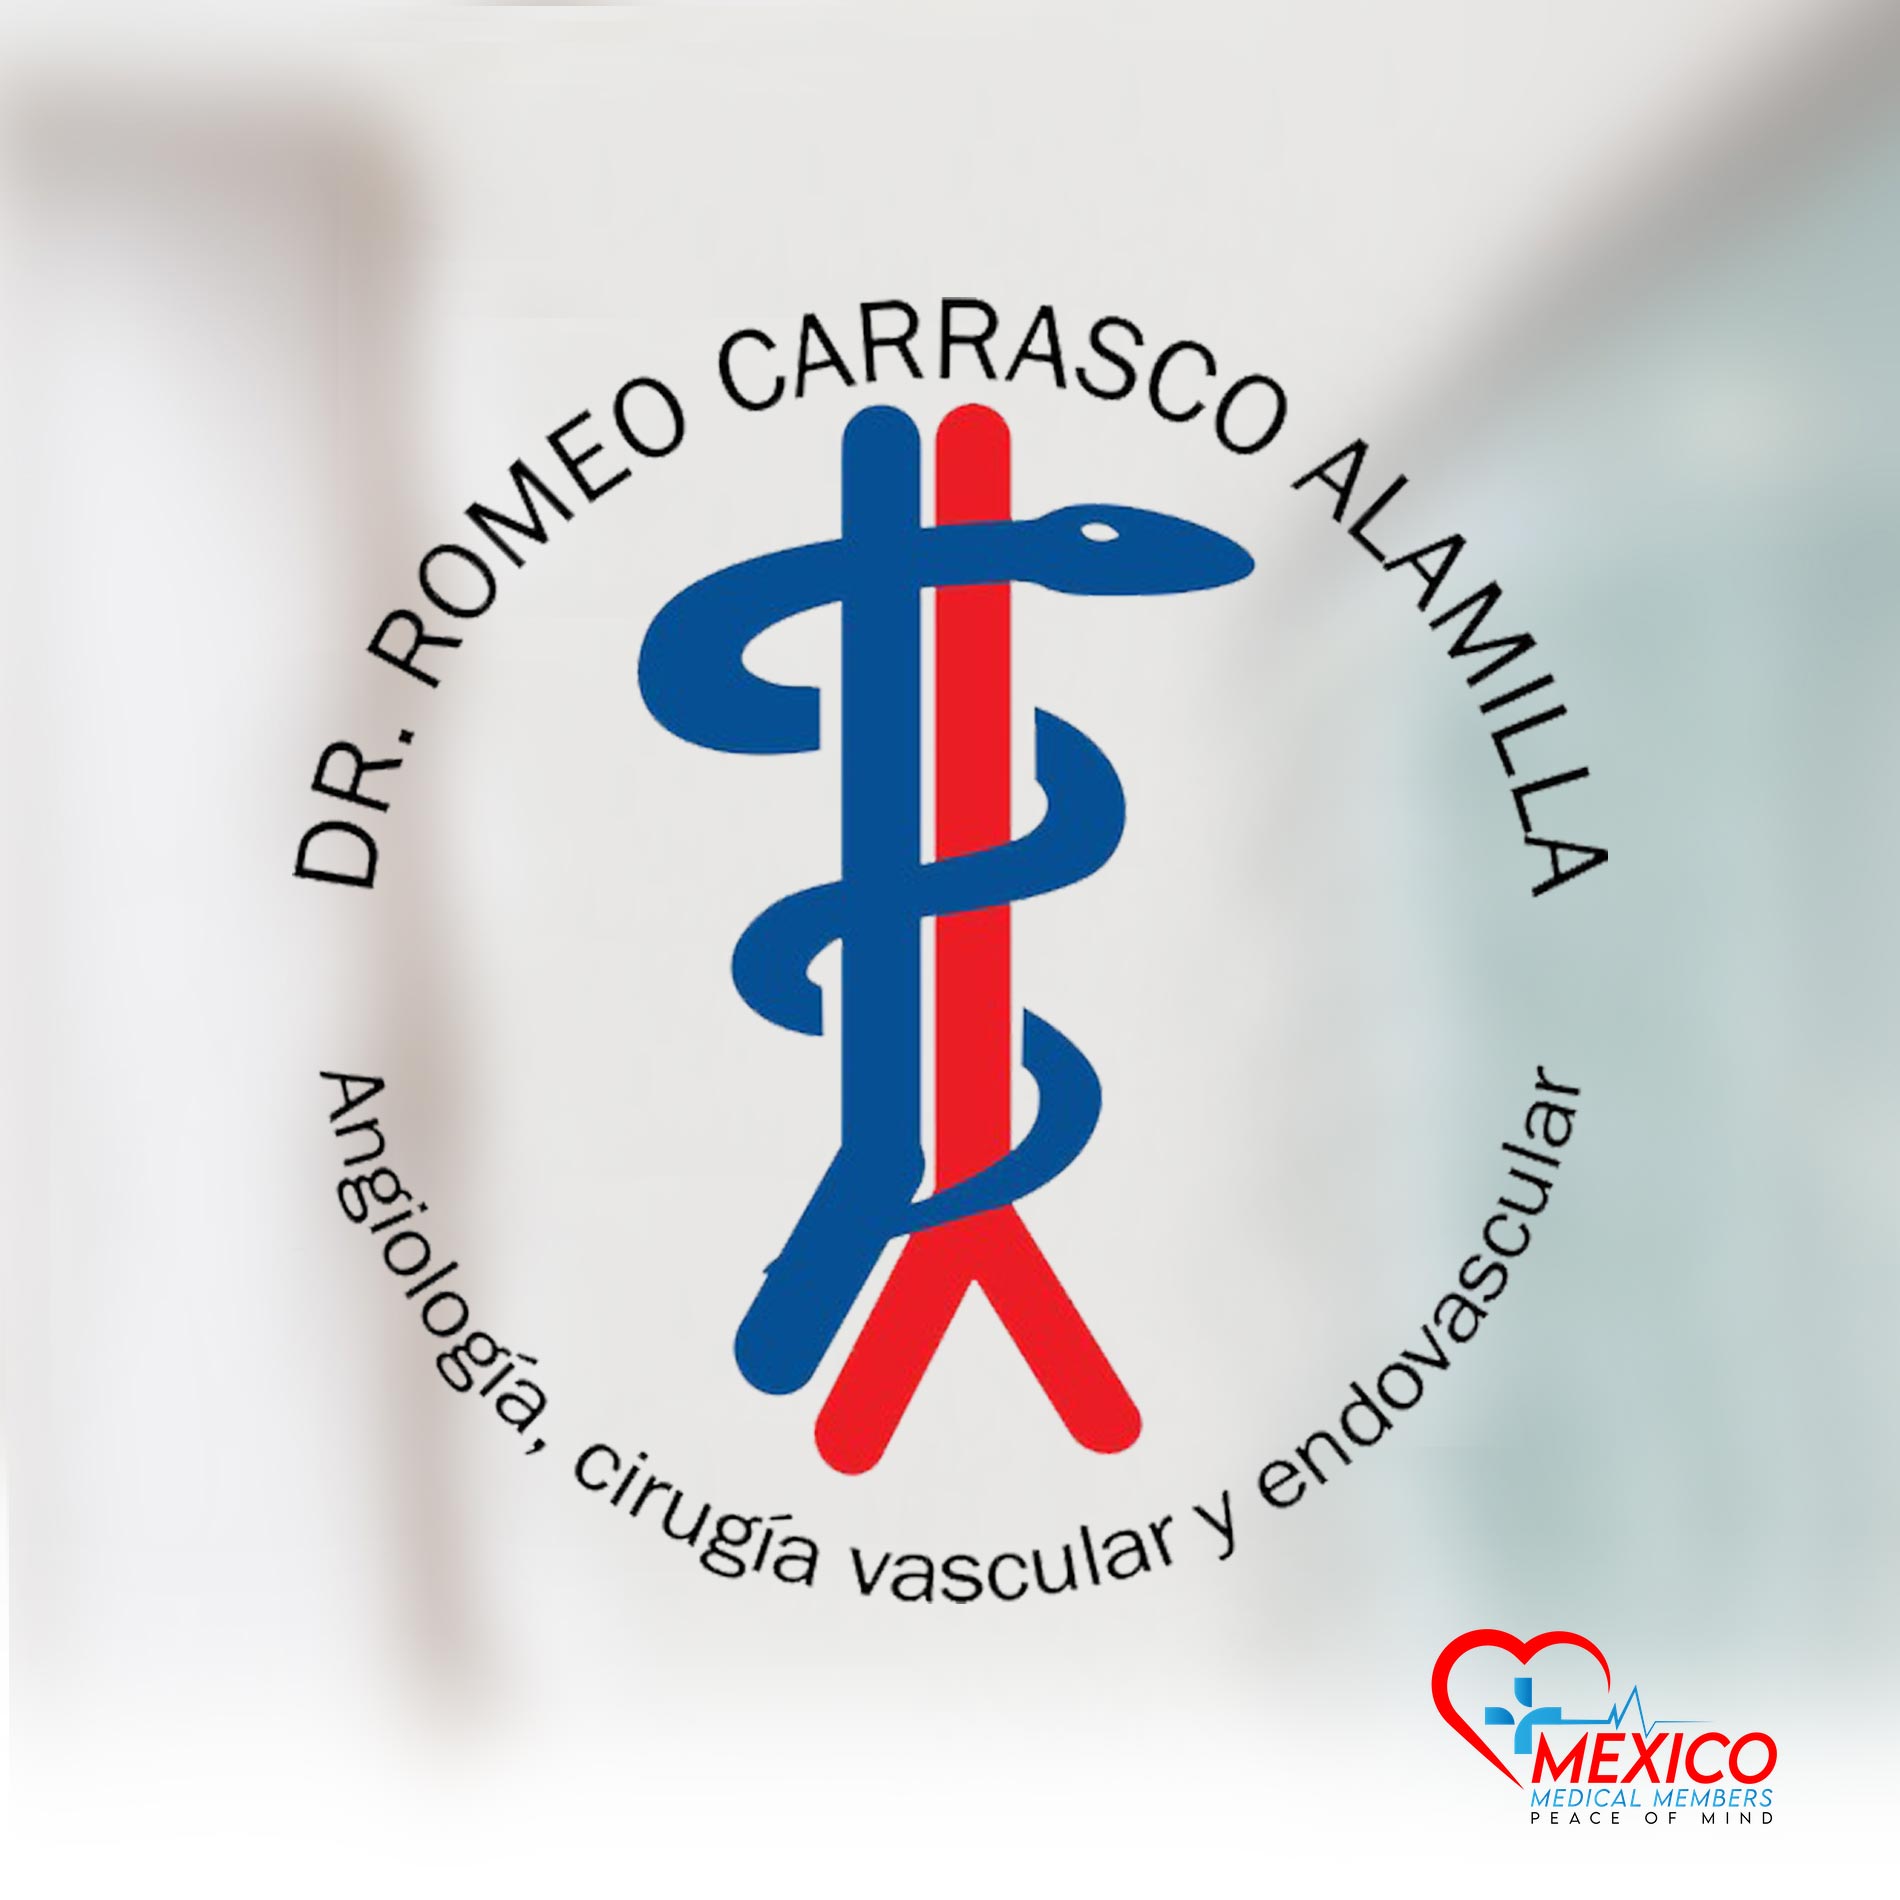 Dr. Romeo Carrasco